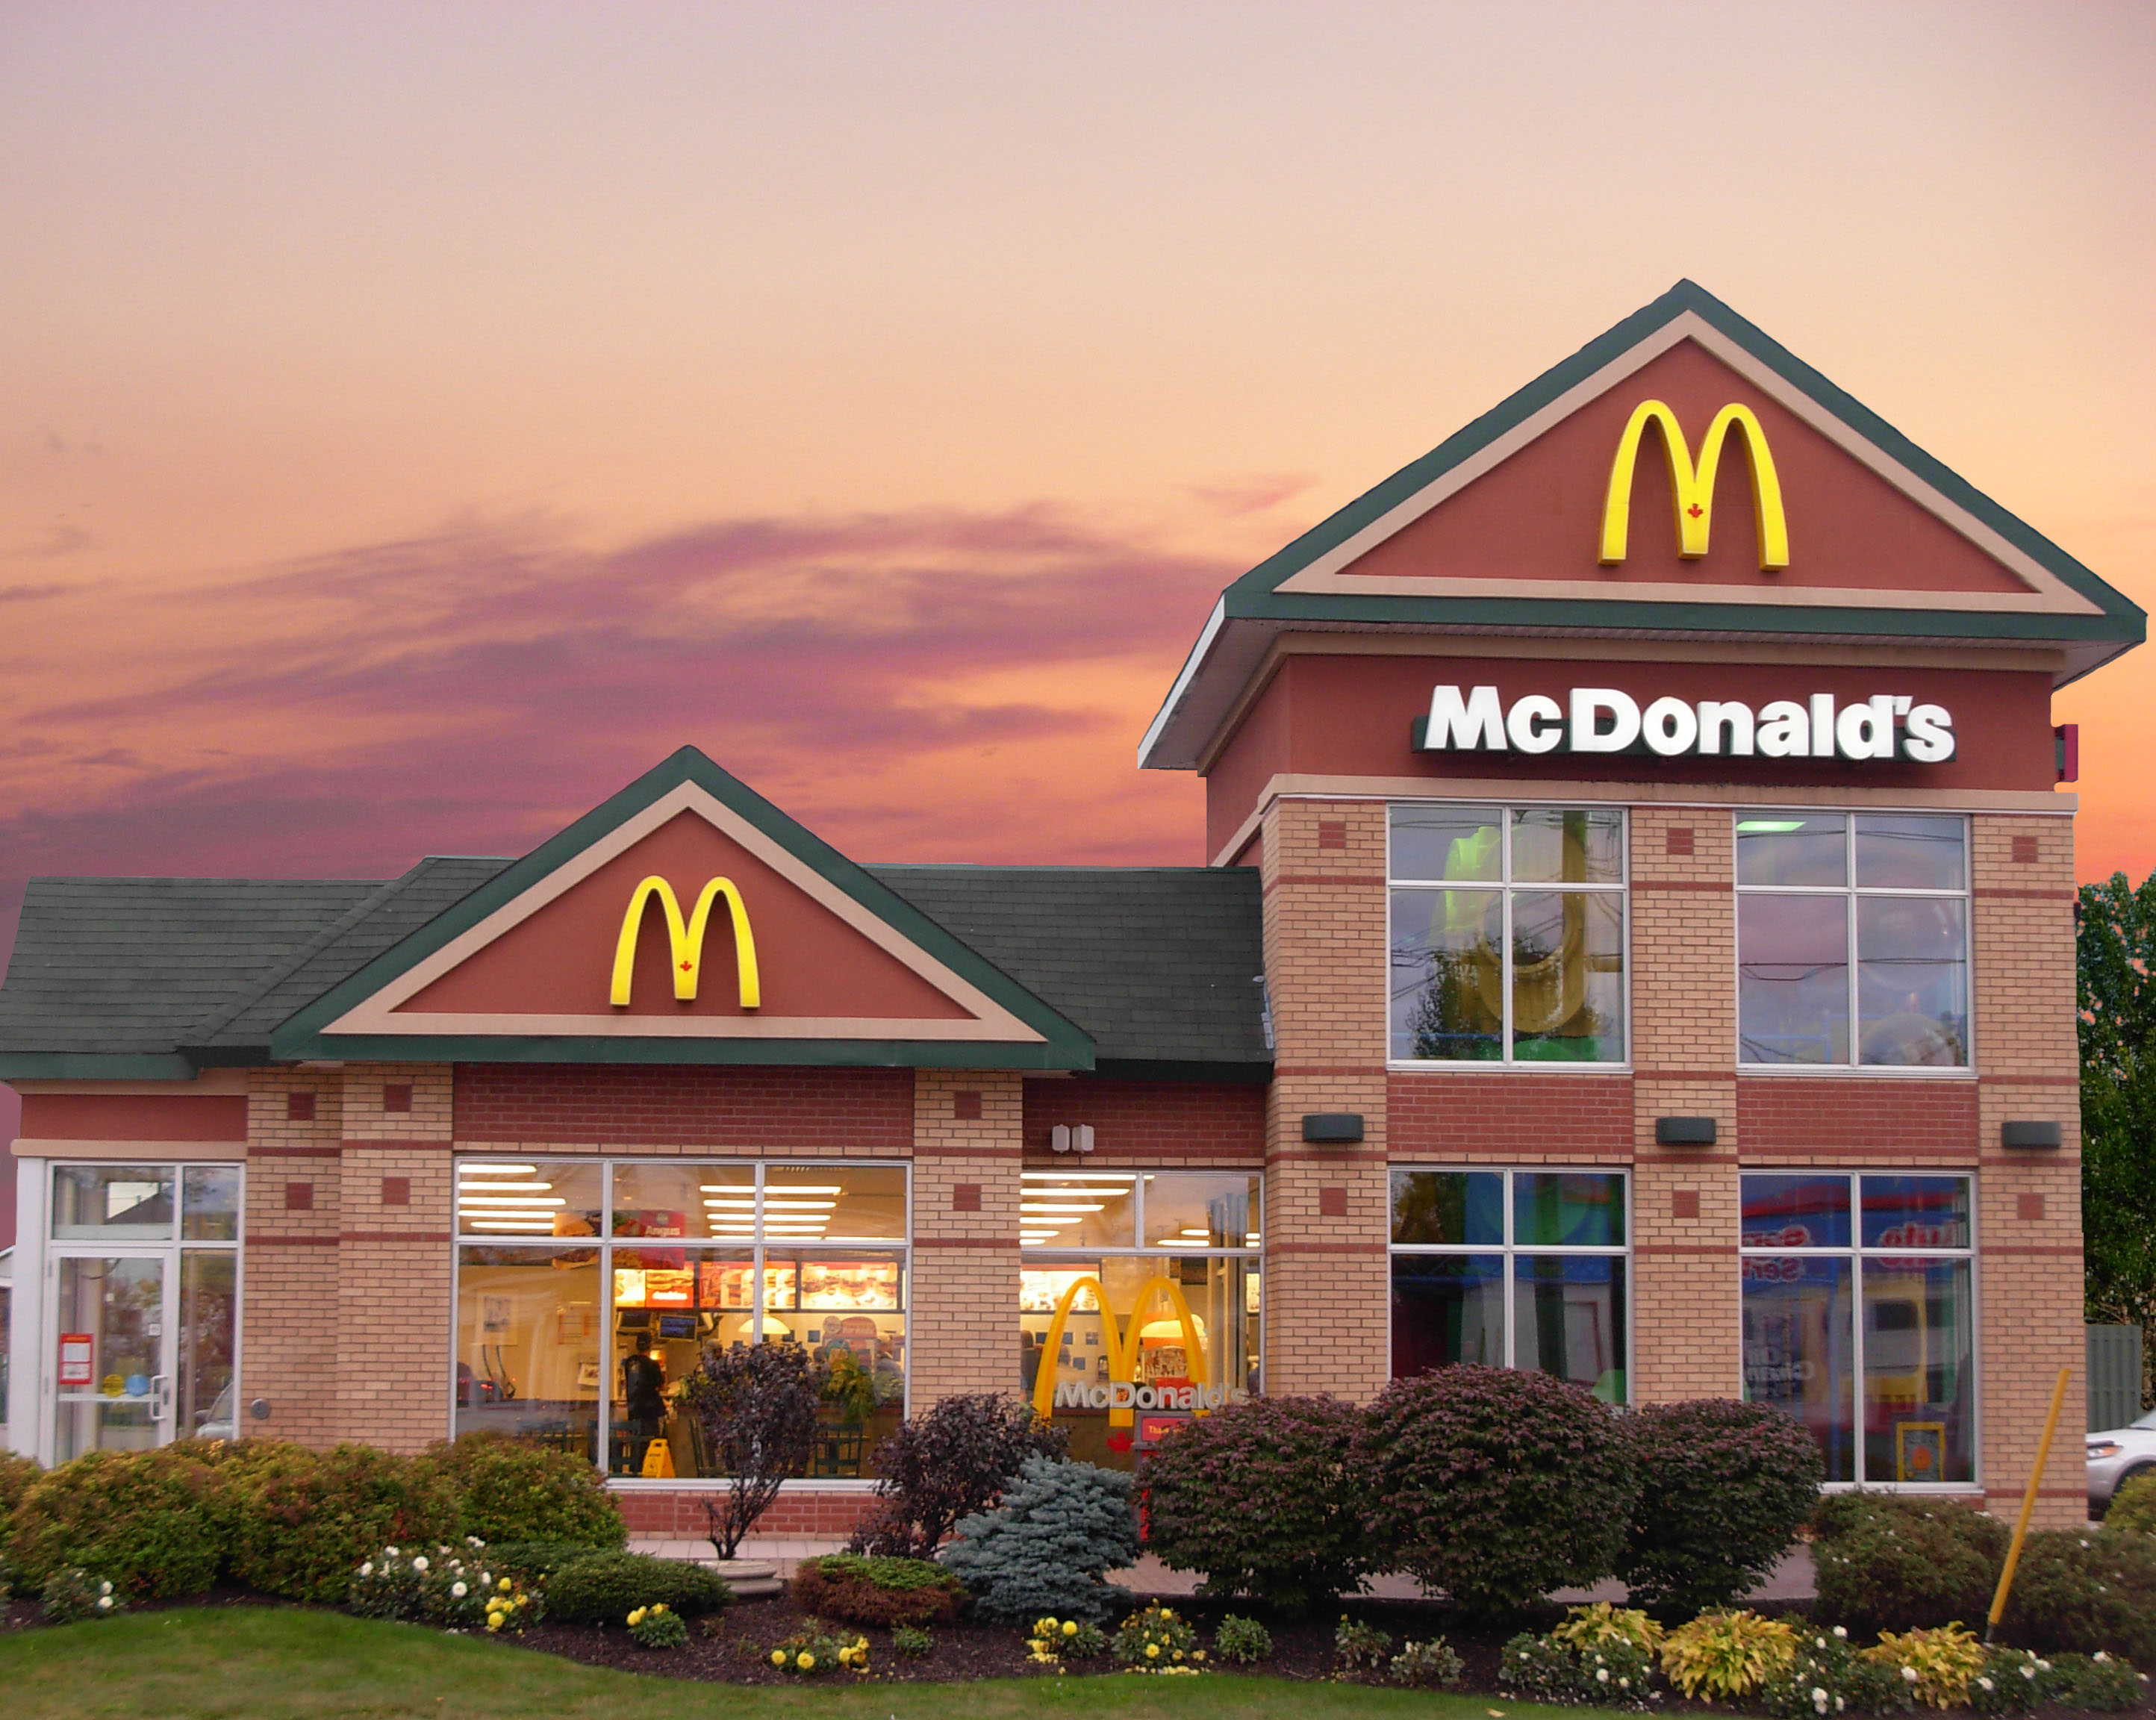 McDonalds franchise